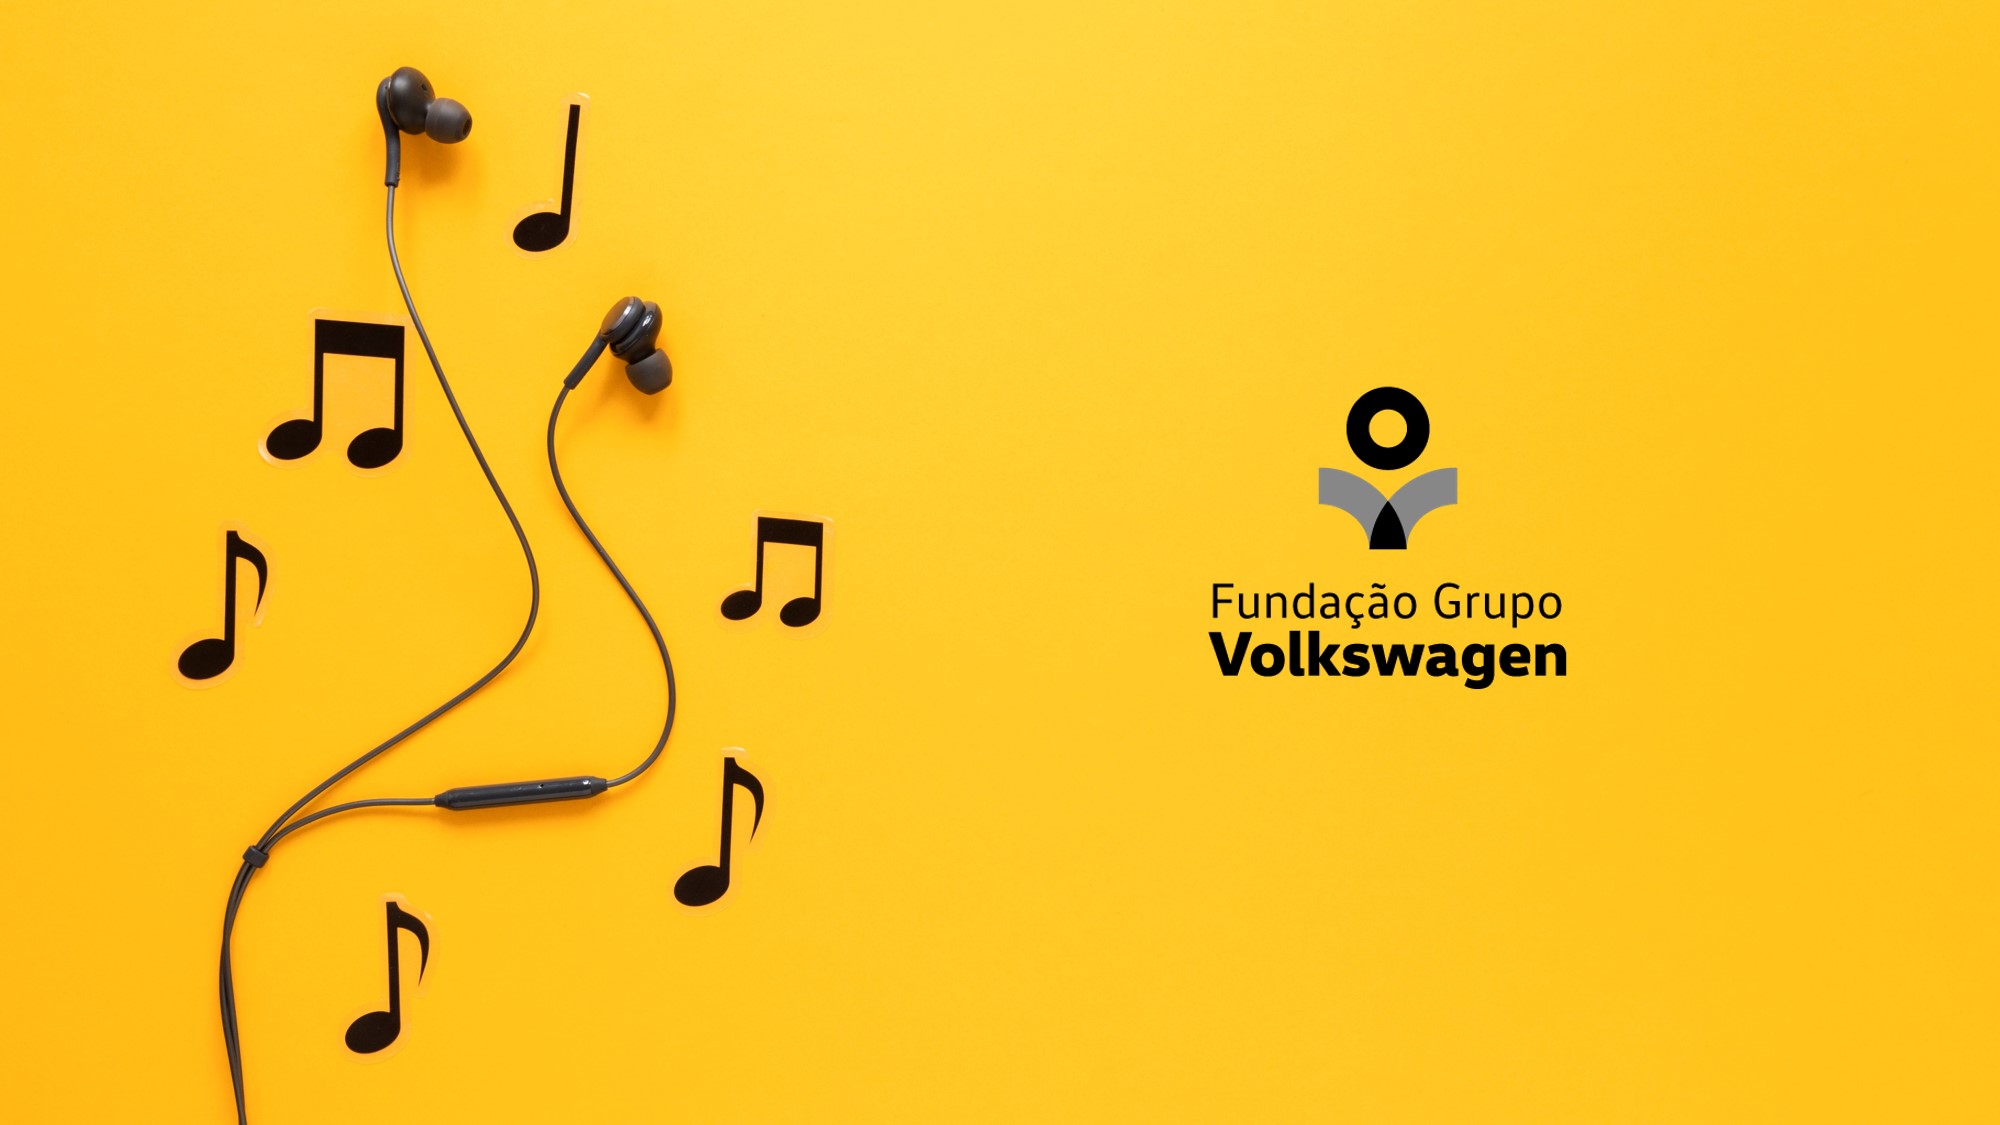 Arte com foto de um fone de ouvido em cima de uma superfície amarela. Ao seu redor, há notas musicais e o logo da Fundação Grupo Volkswagen